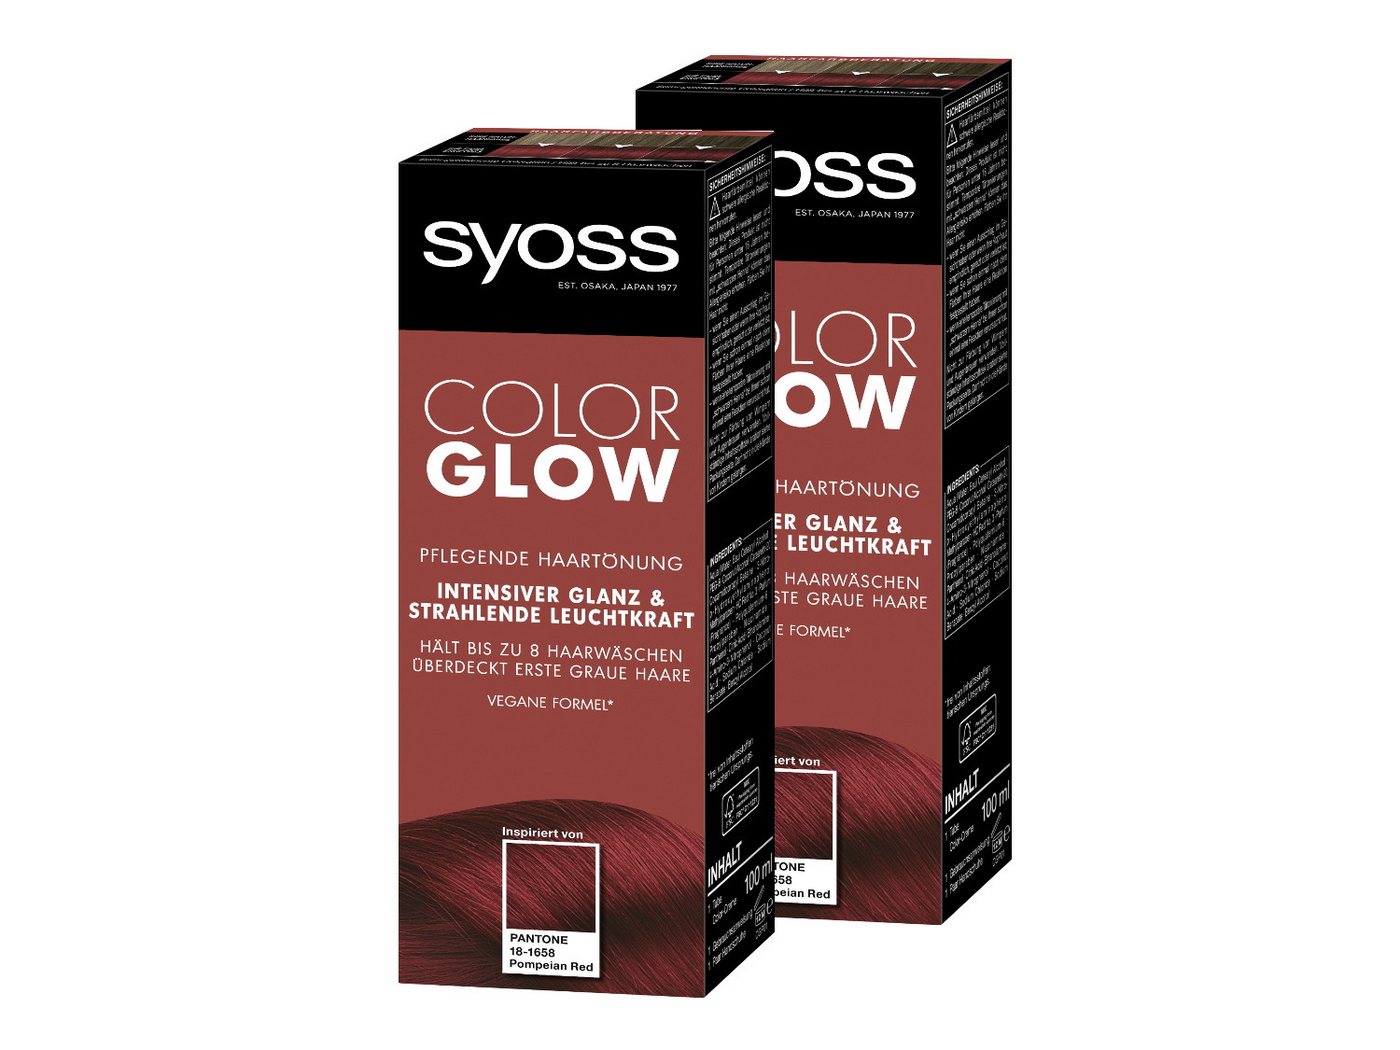 Syoss Haartönung Color Glow Pflegend Pompeian Red Pantone 18-1658, 2-tlg., 2x 100 ml, für strahlende Farbintensität bis zu 8 Haarwäschen von Syoss